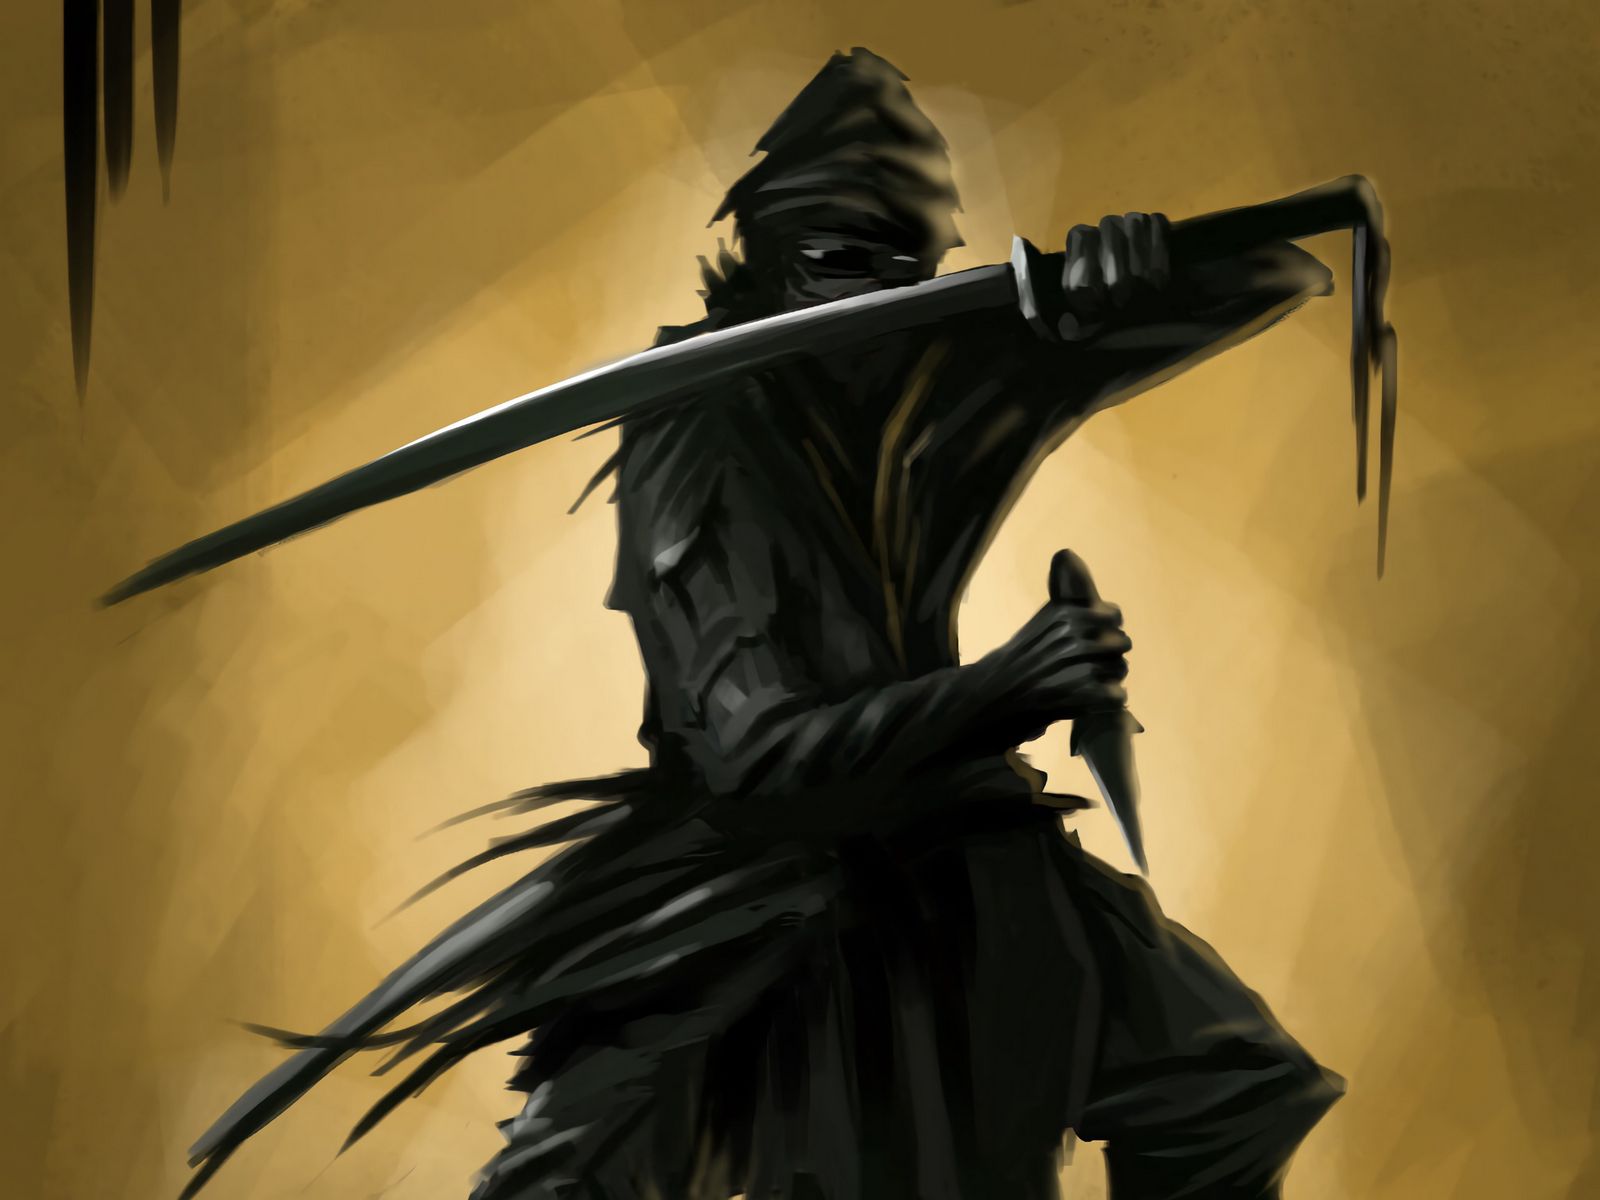 Ninja Assassin Sword Master Stock Illustration 1490203910